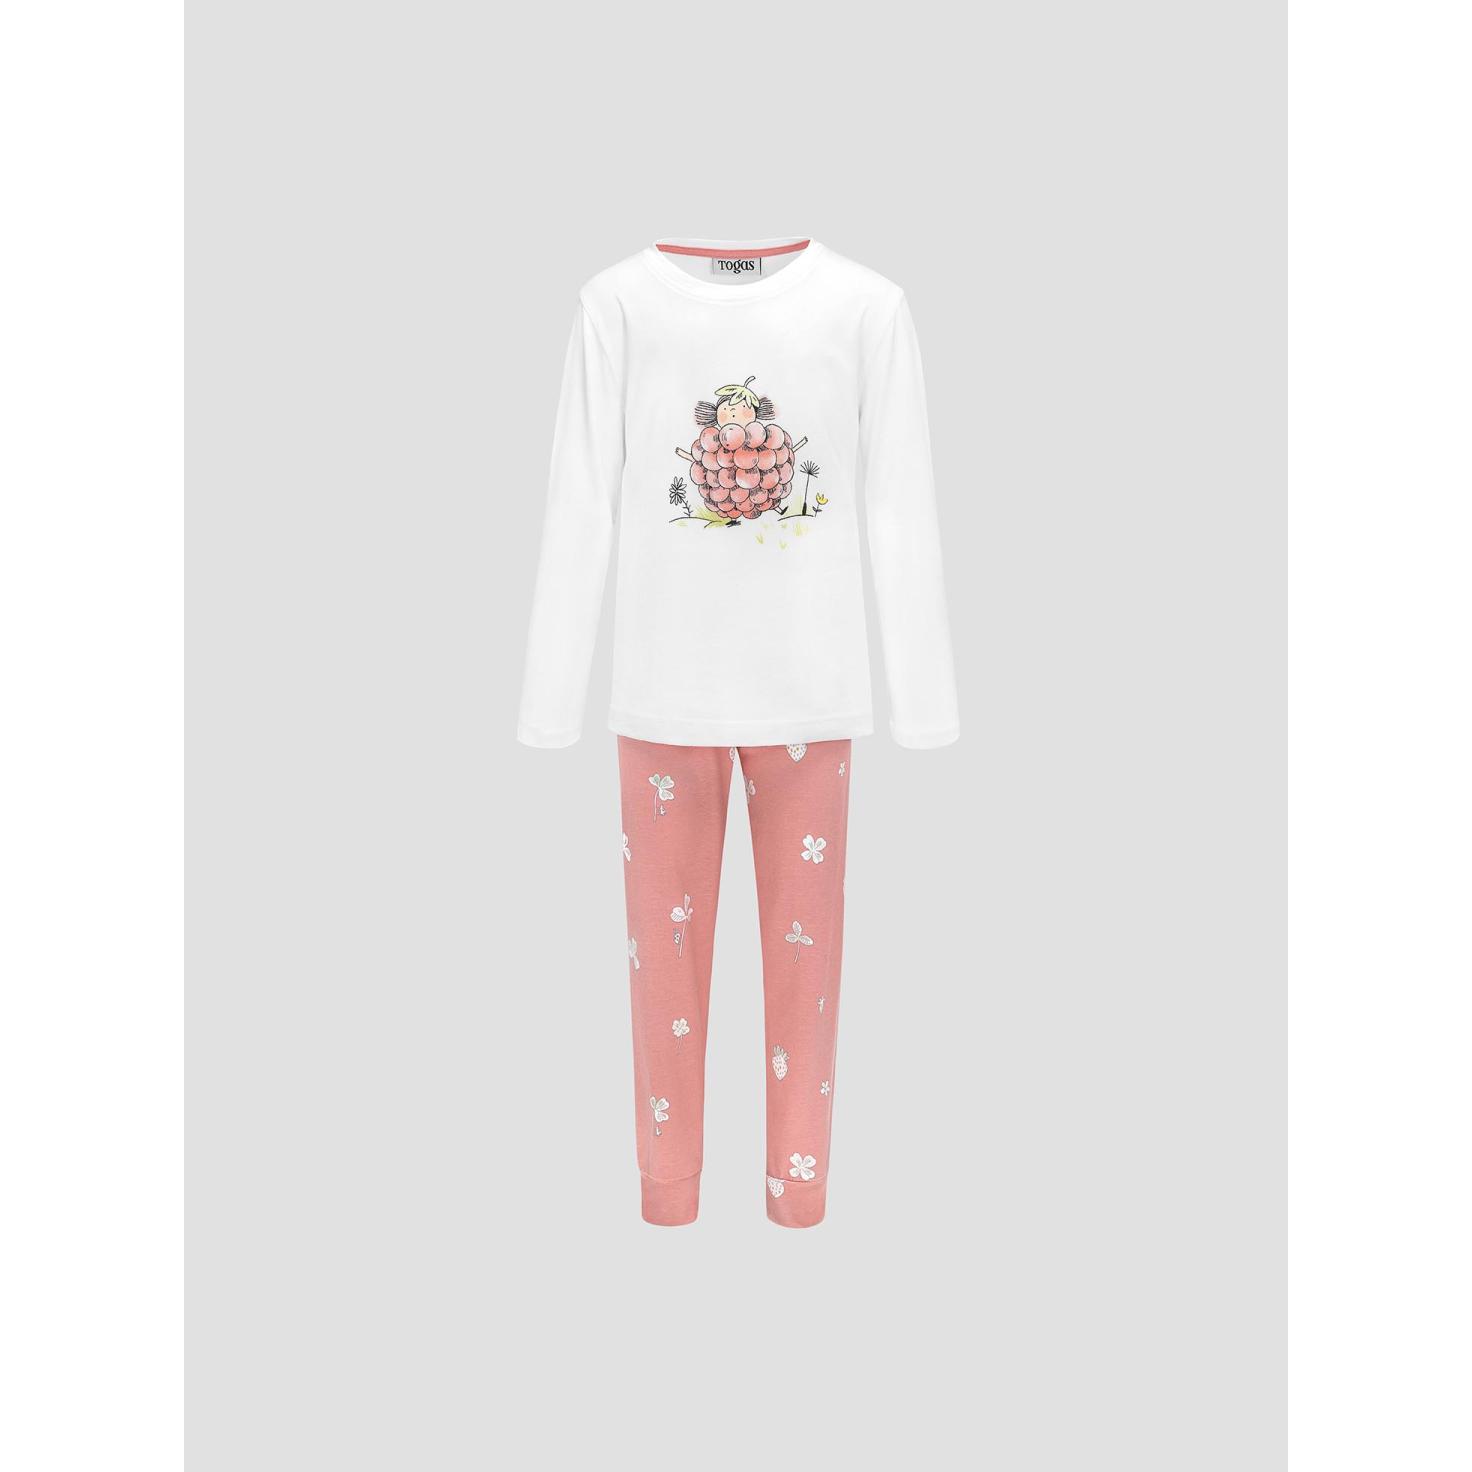 Пижама для девочек Kids by togas Стробби бело-розовый 128-134 см жен пижама с шортами инь янь белый р 54